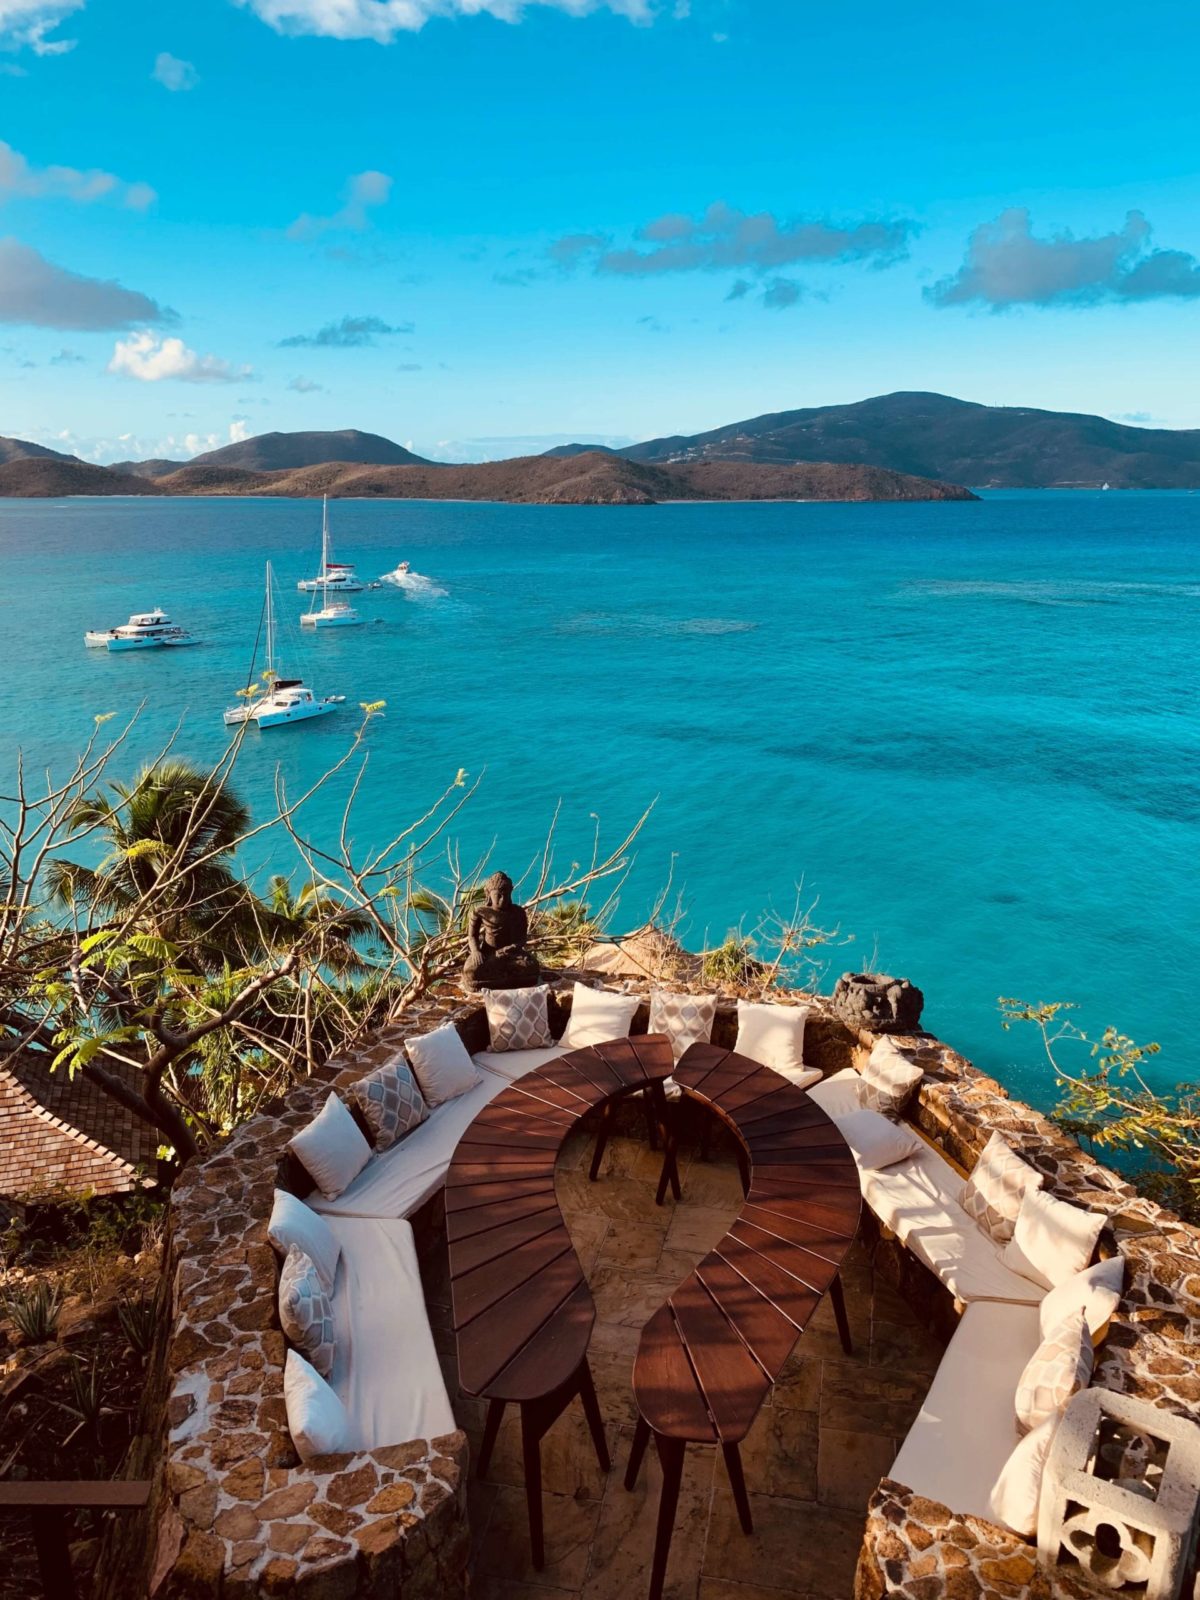 Vacances 2020 - Une vue des bateaux sur l'océan depuis une salle à manger en plein air dans les îles Vierges britanniques.